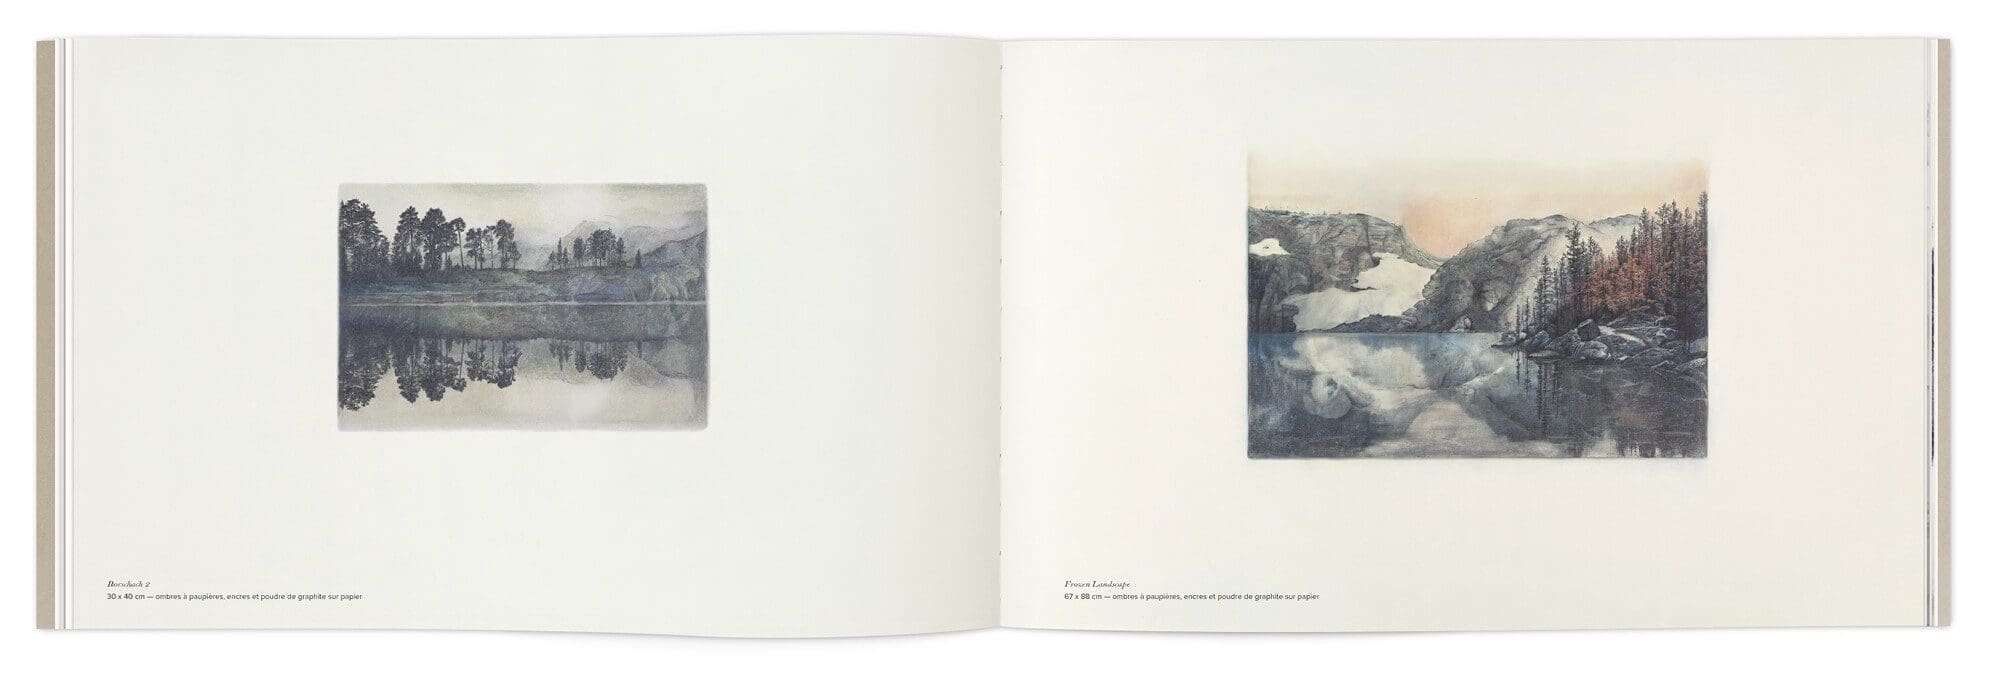 Les paysages en couleurs et en petits formats d'Hélène Muheim dans son livre Quelque part dans l'inachevé, direction artistique IchetKar